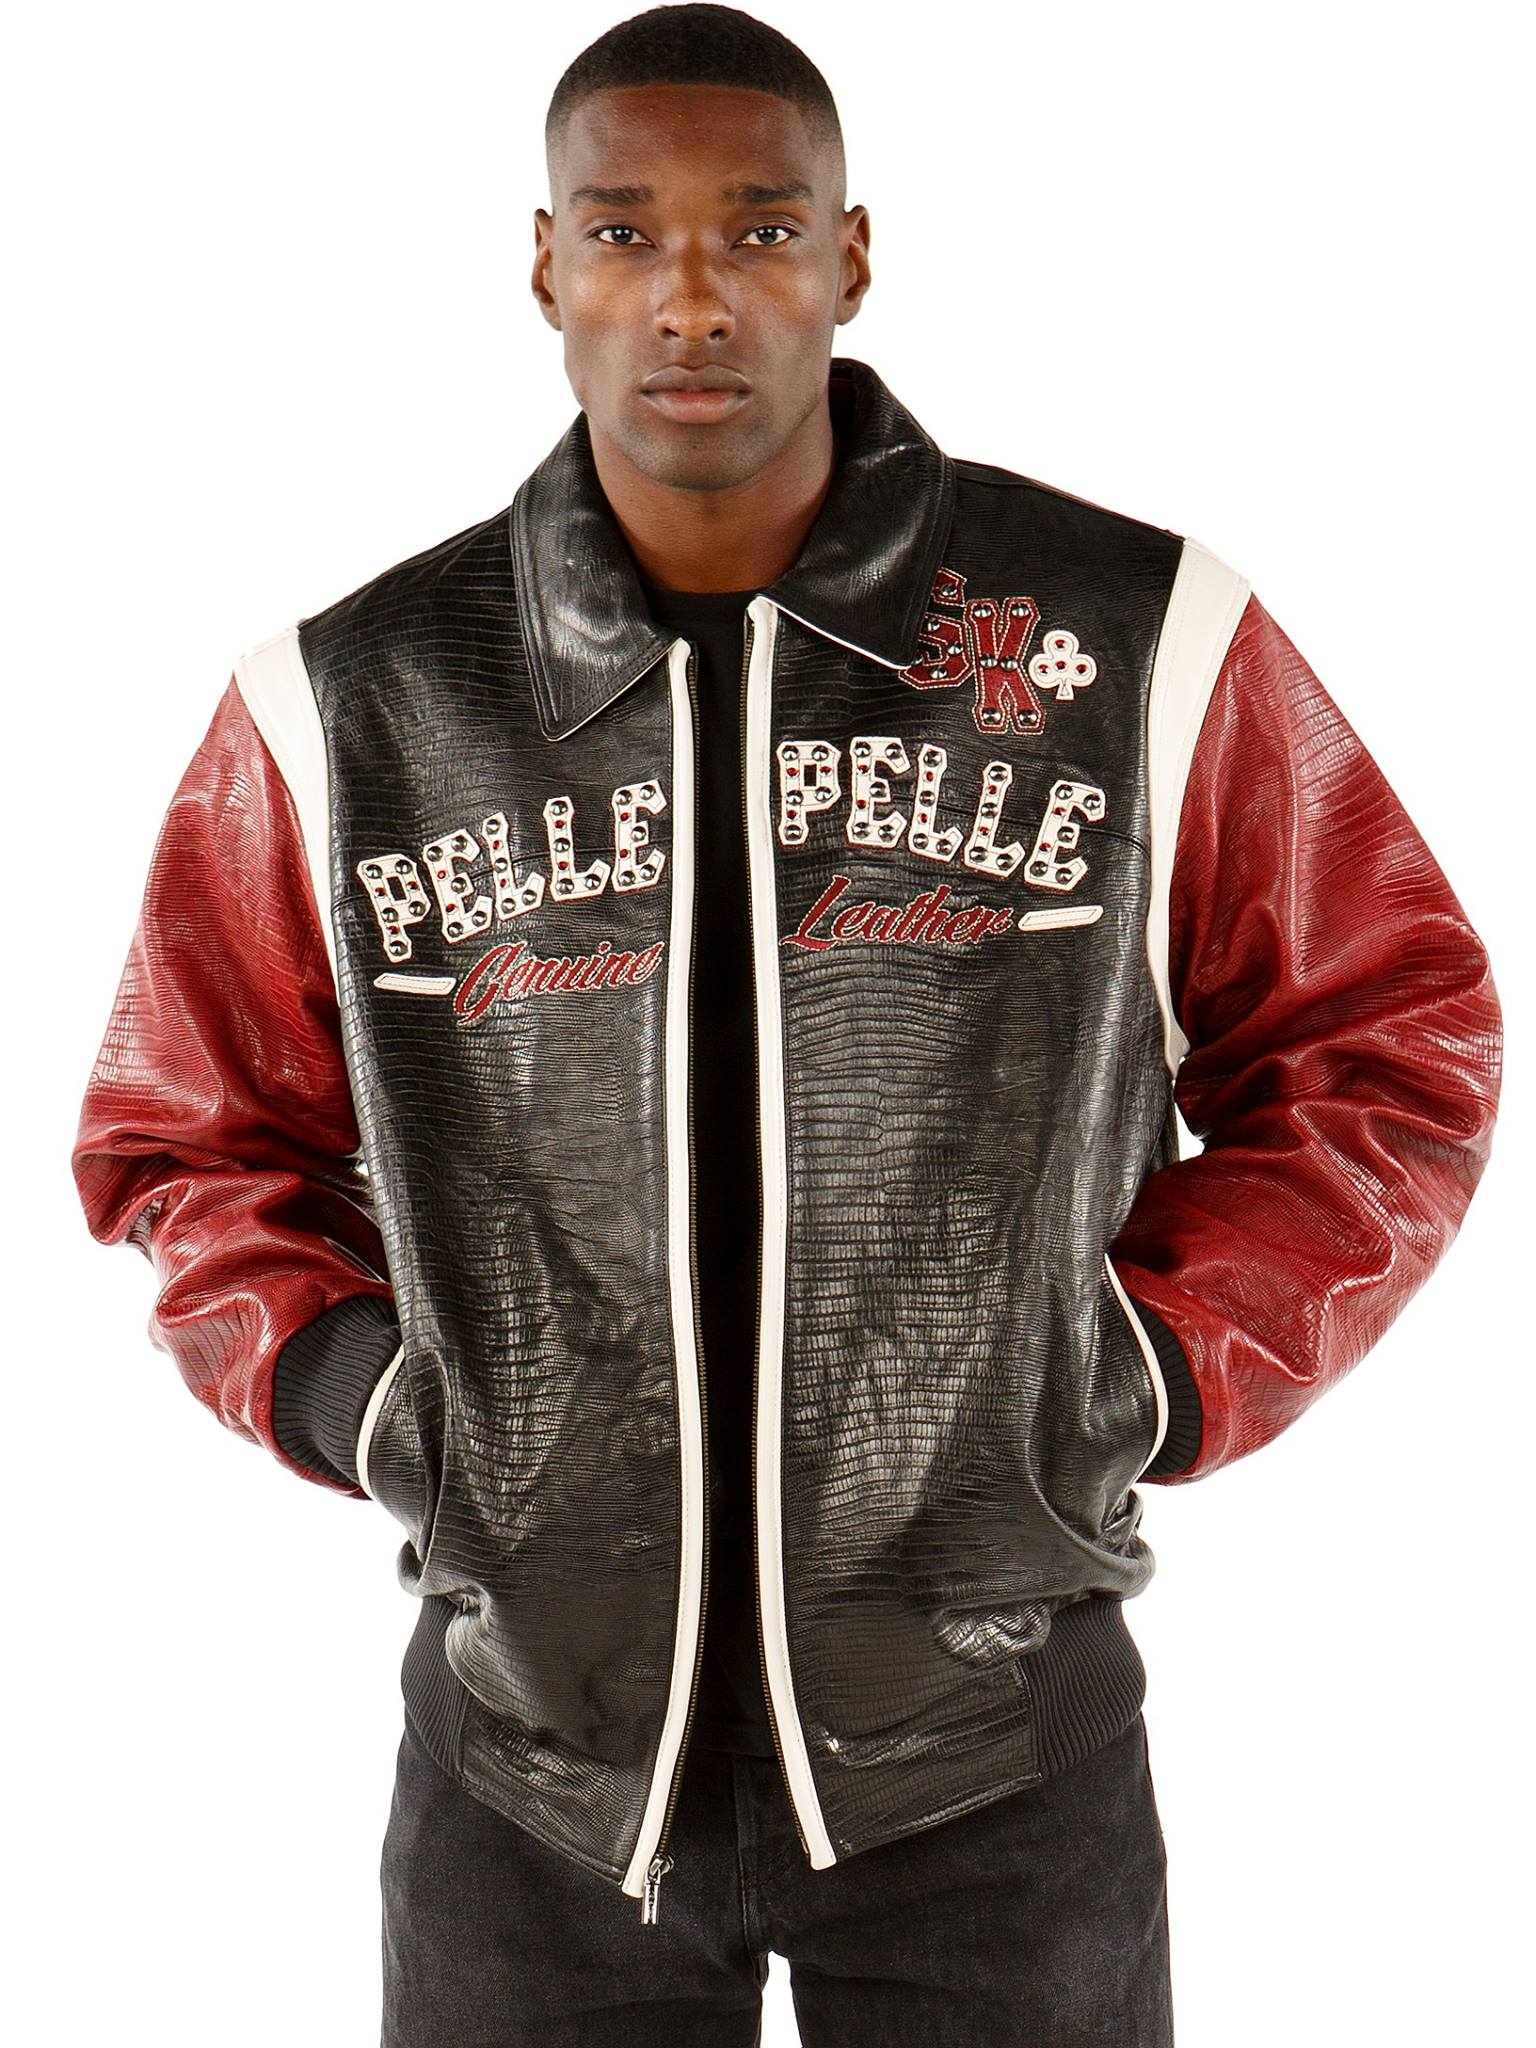 pelle pelle street kings leather jacket, pelle pelle store,black and maroon leather